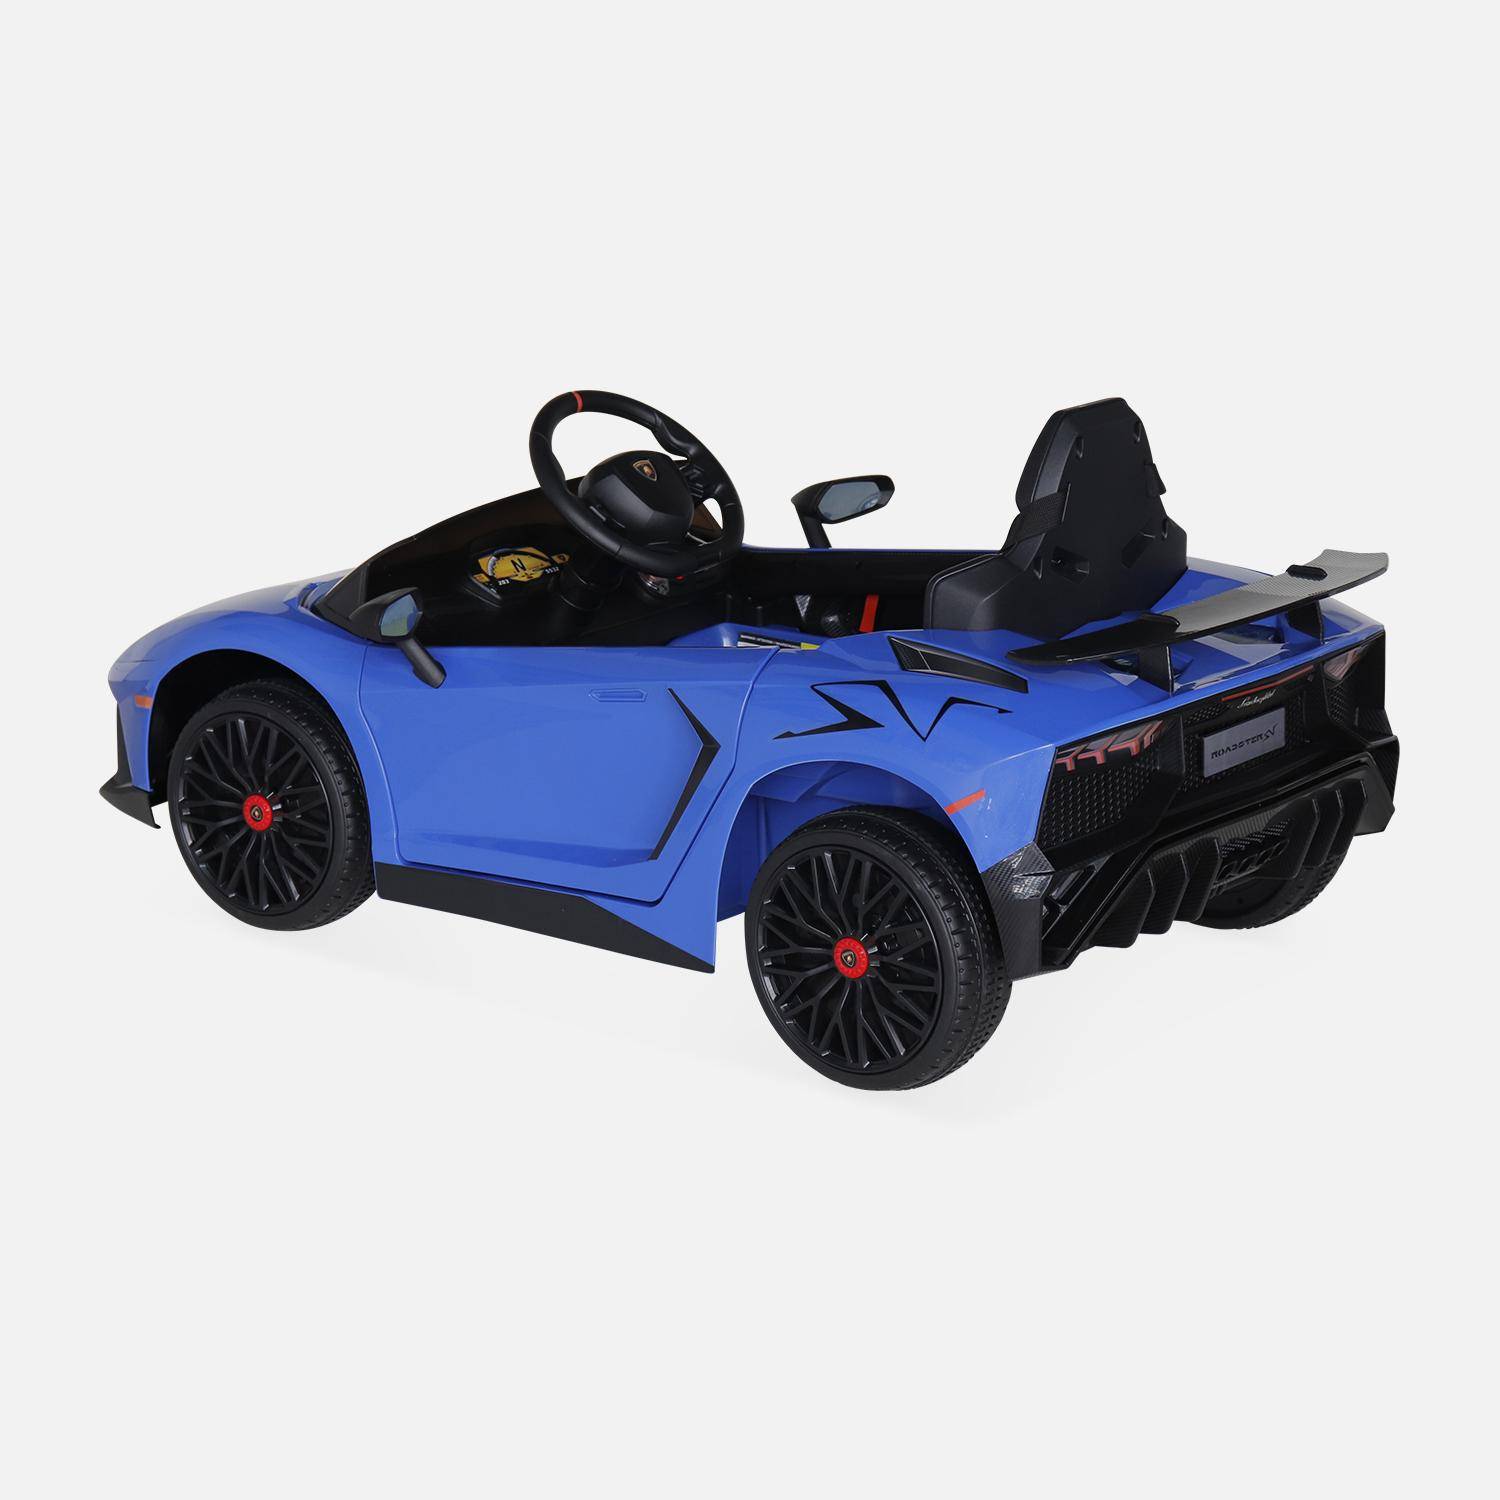 12V elektrische Lamborghini kinderauto, blauw, 1 zitplaats, met radio, afstandsbediening, MP3, USB-poort en functionele koplampen,sweeek,Photo4